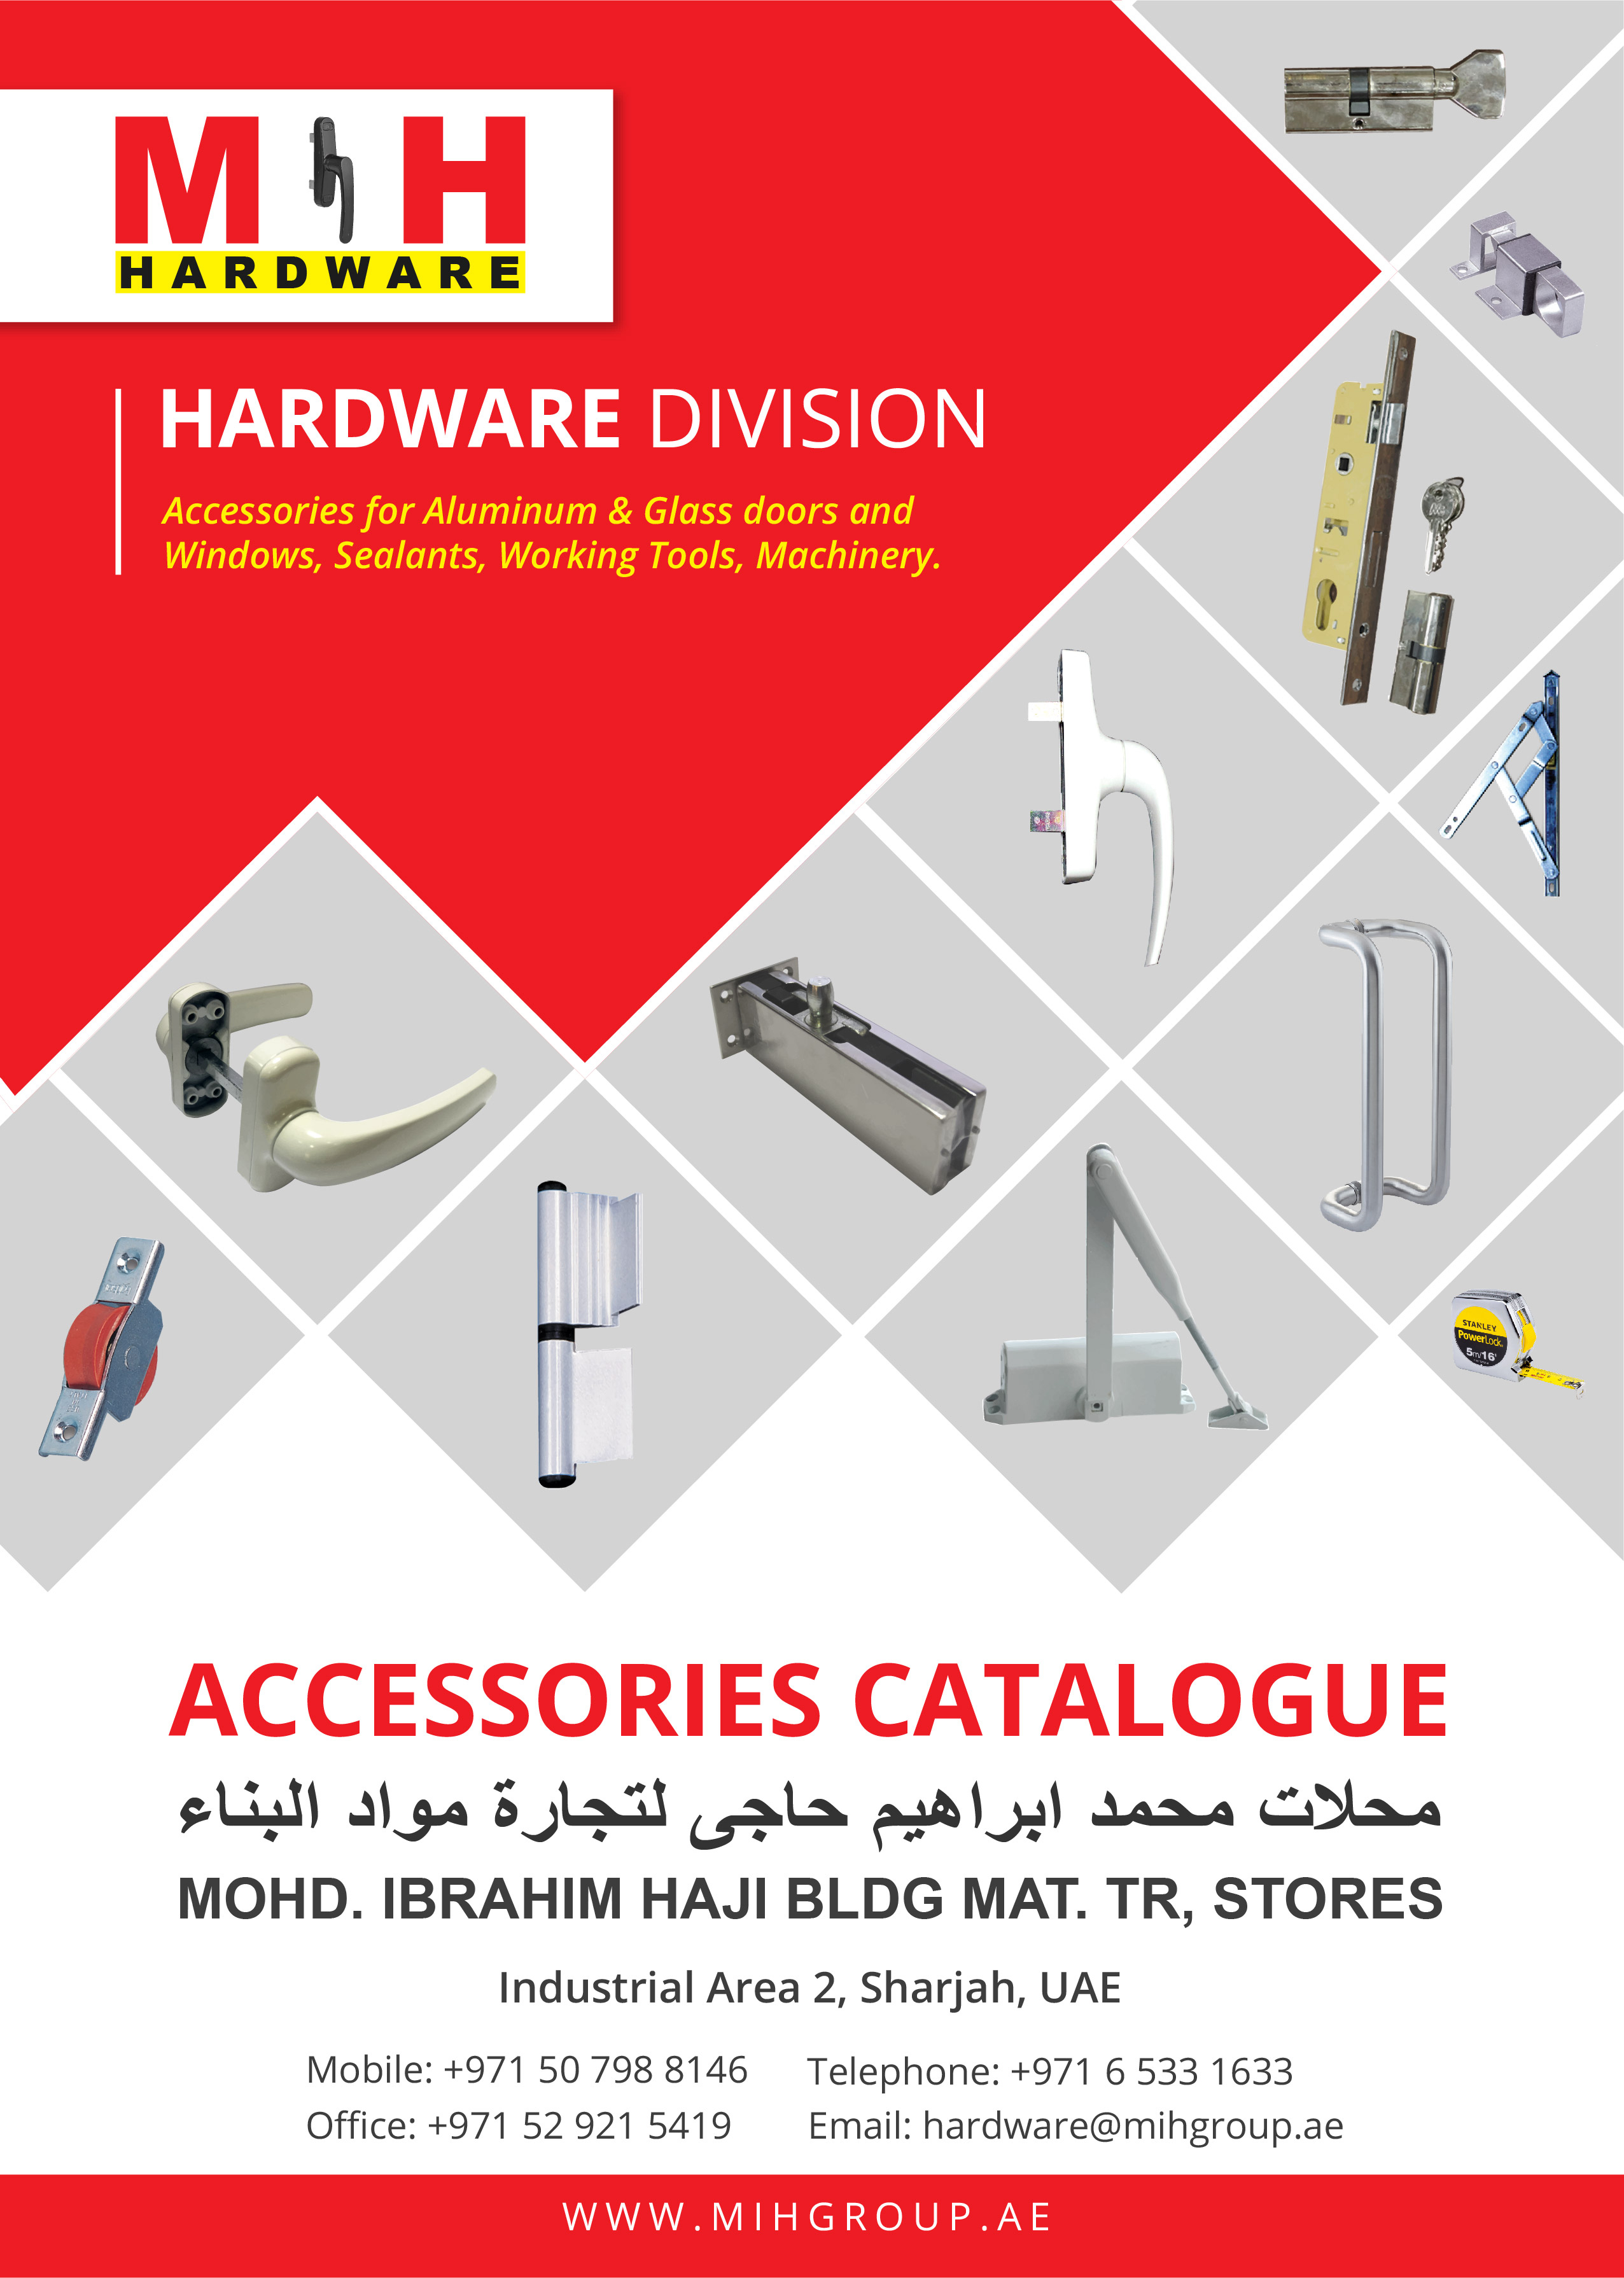 Hardware Catalog